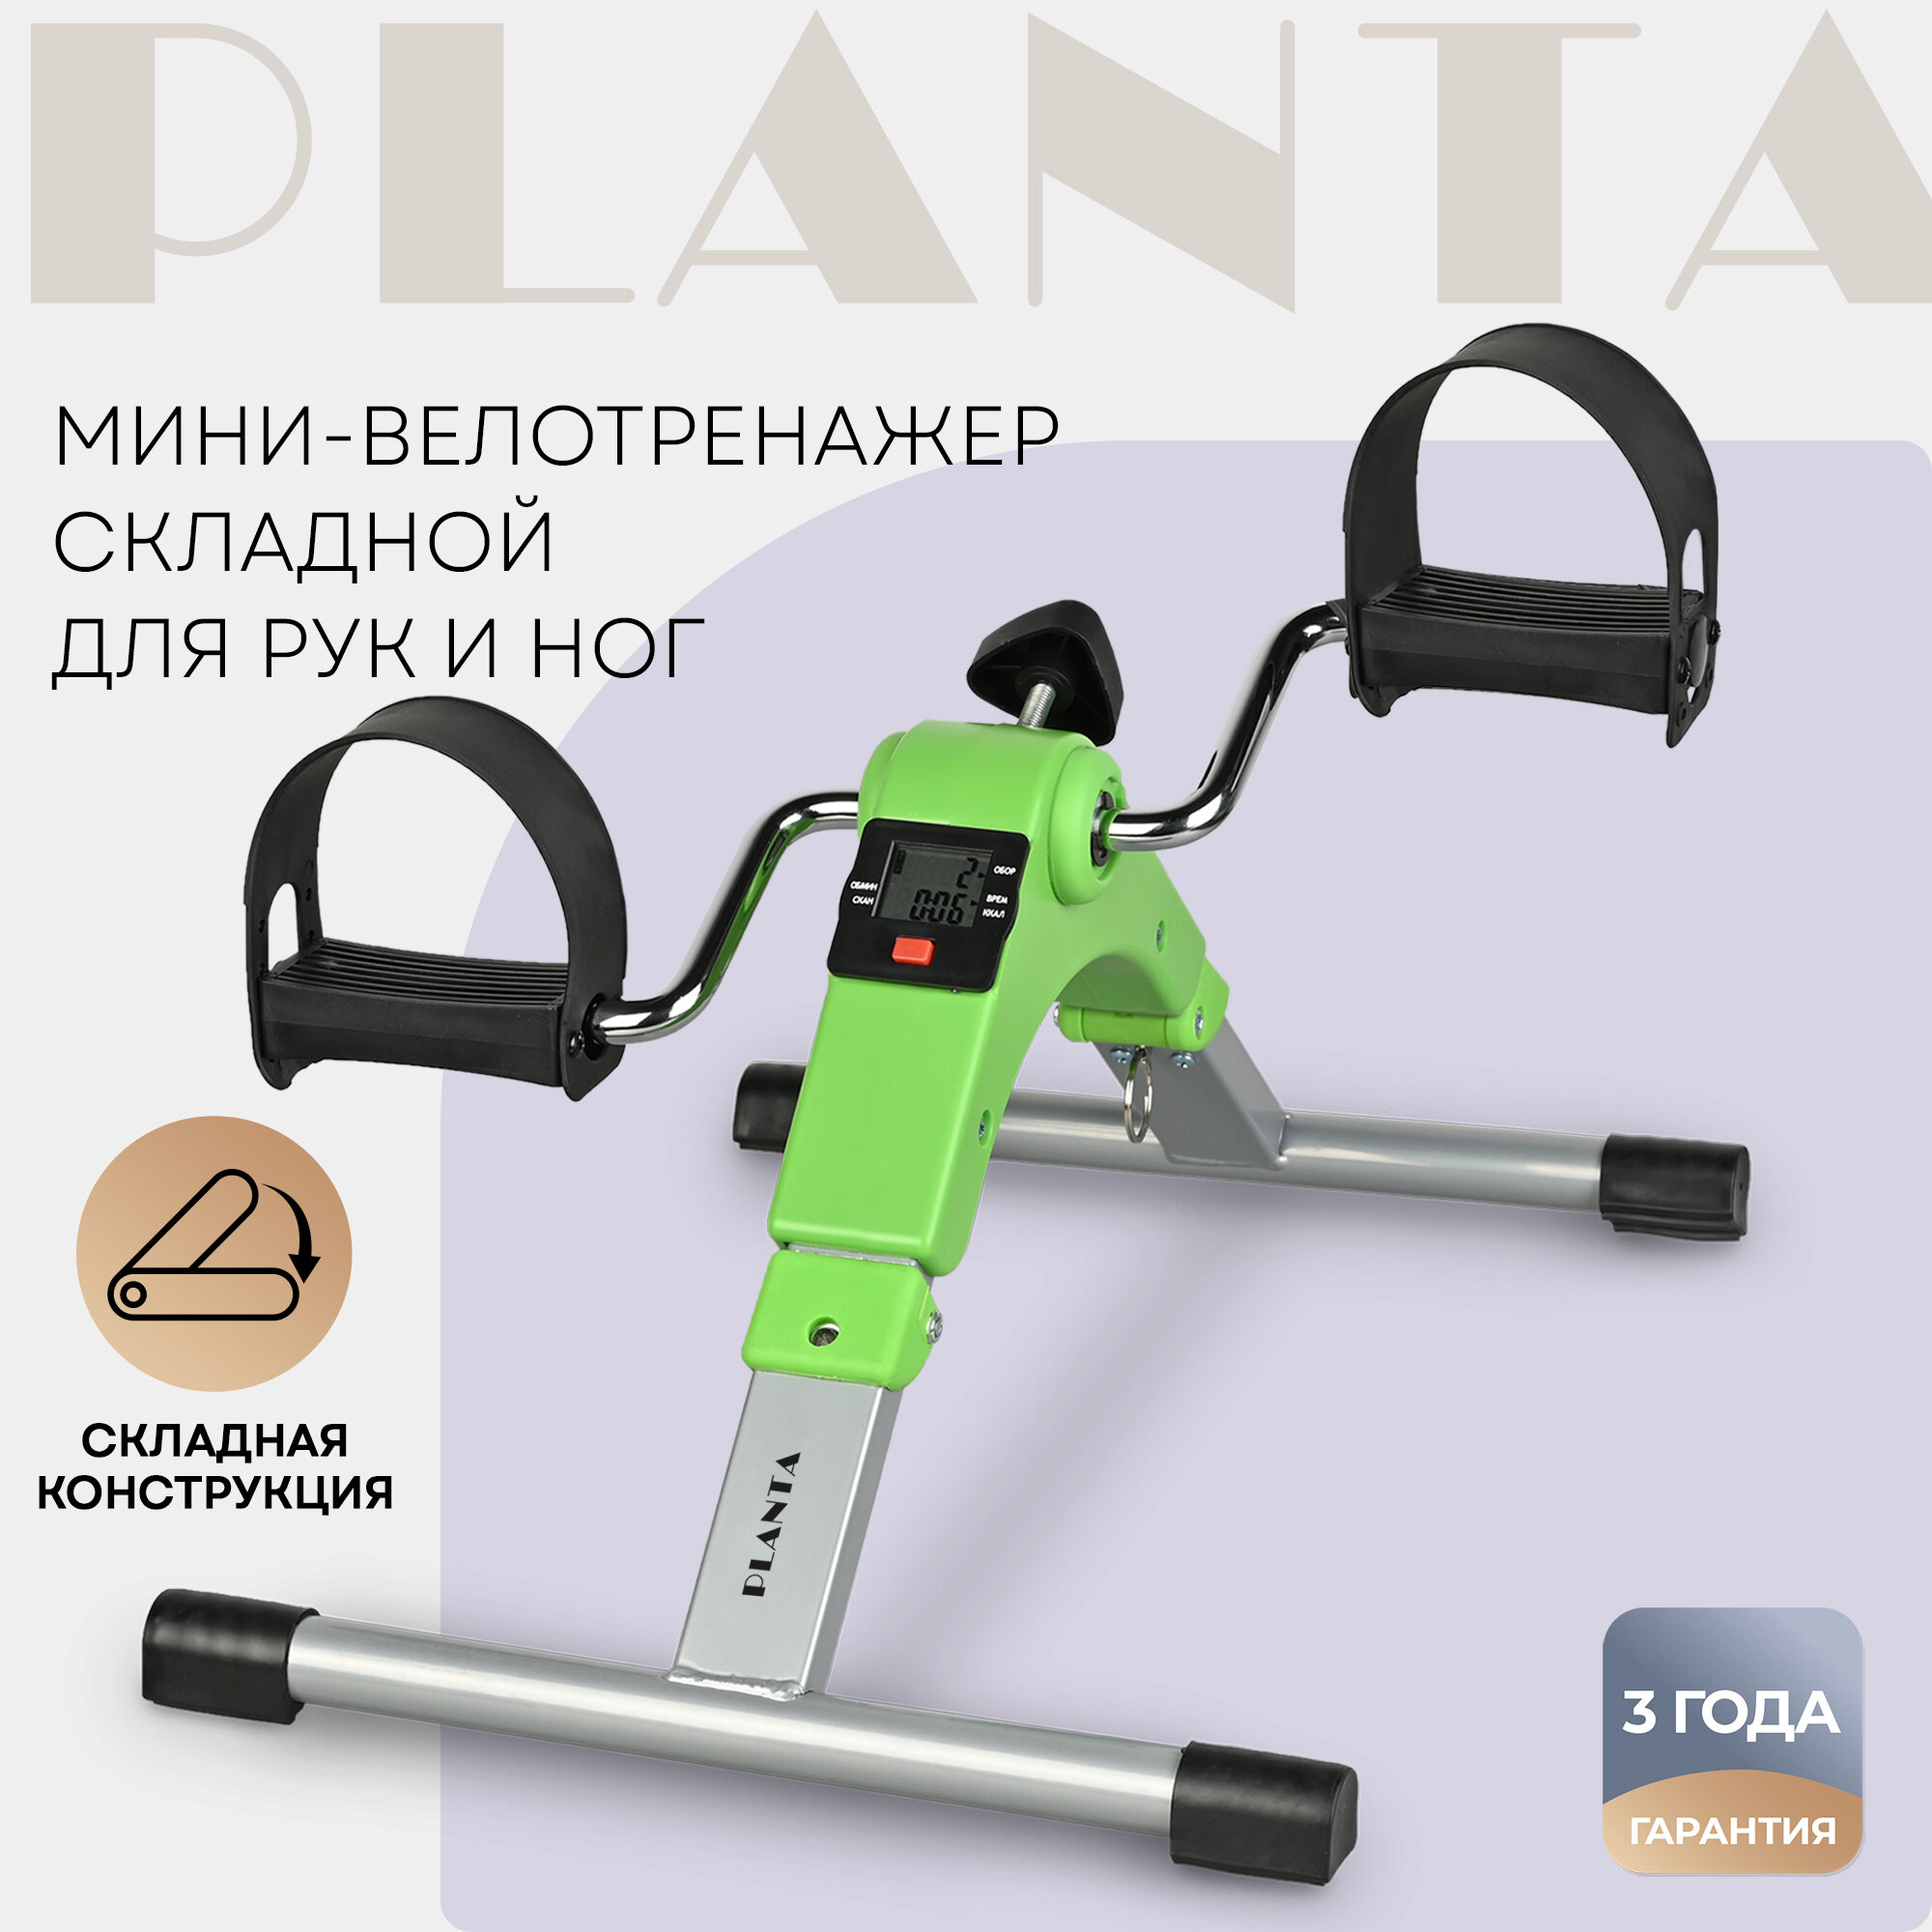 Велотренажер Planta FD-BIKE-001